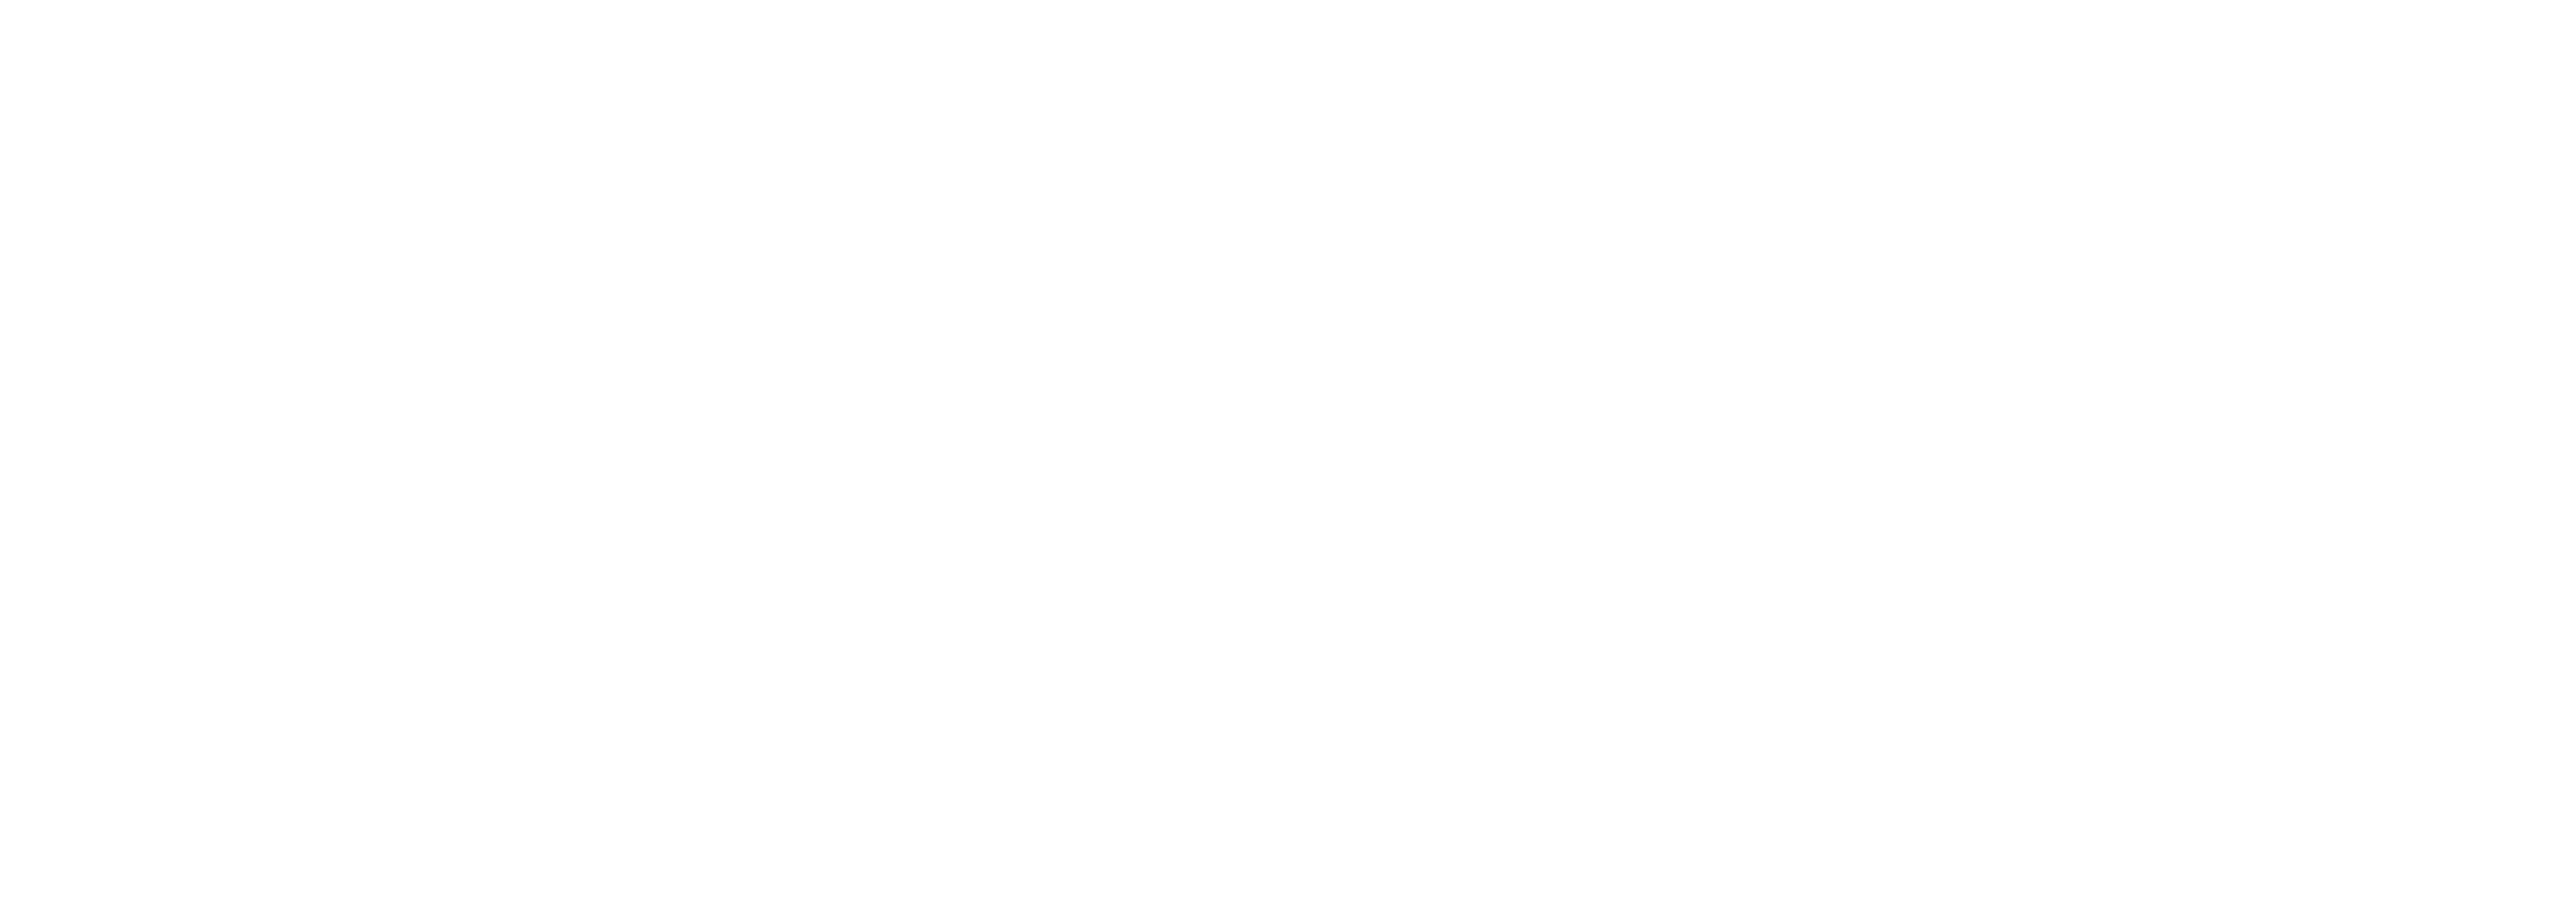 Link to external website (http://www.berkeley.edu)